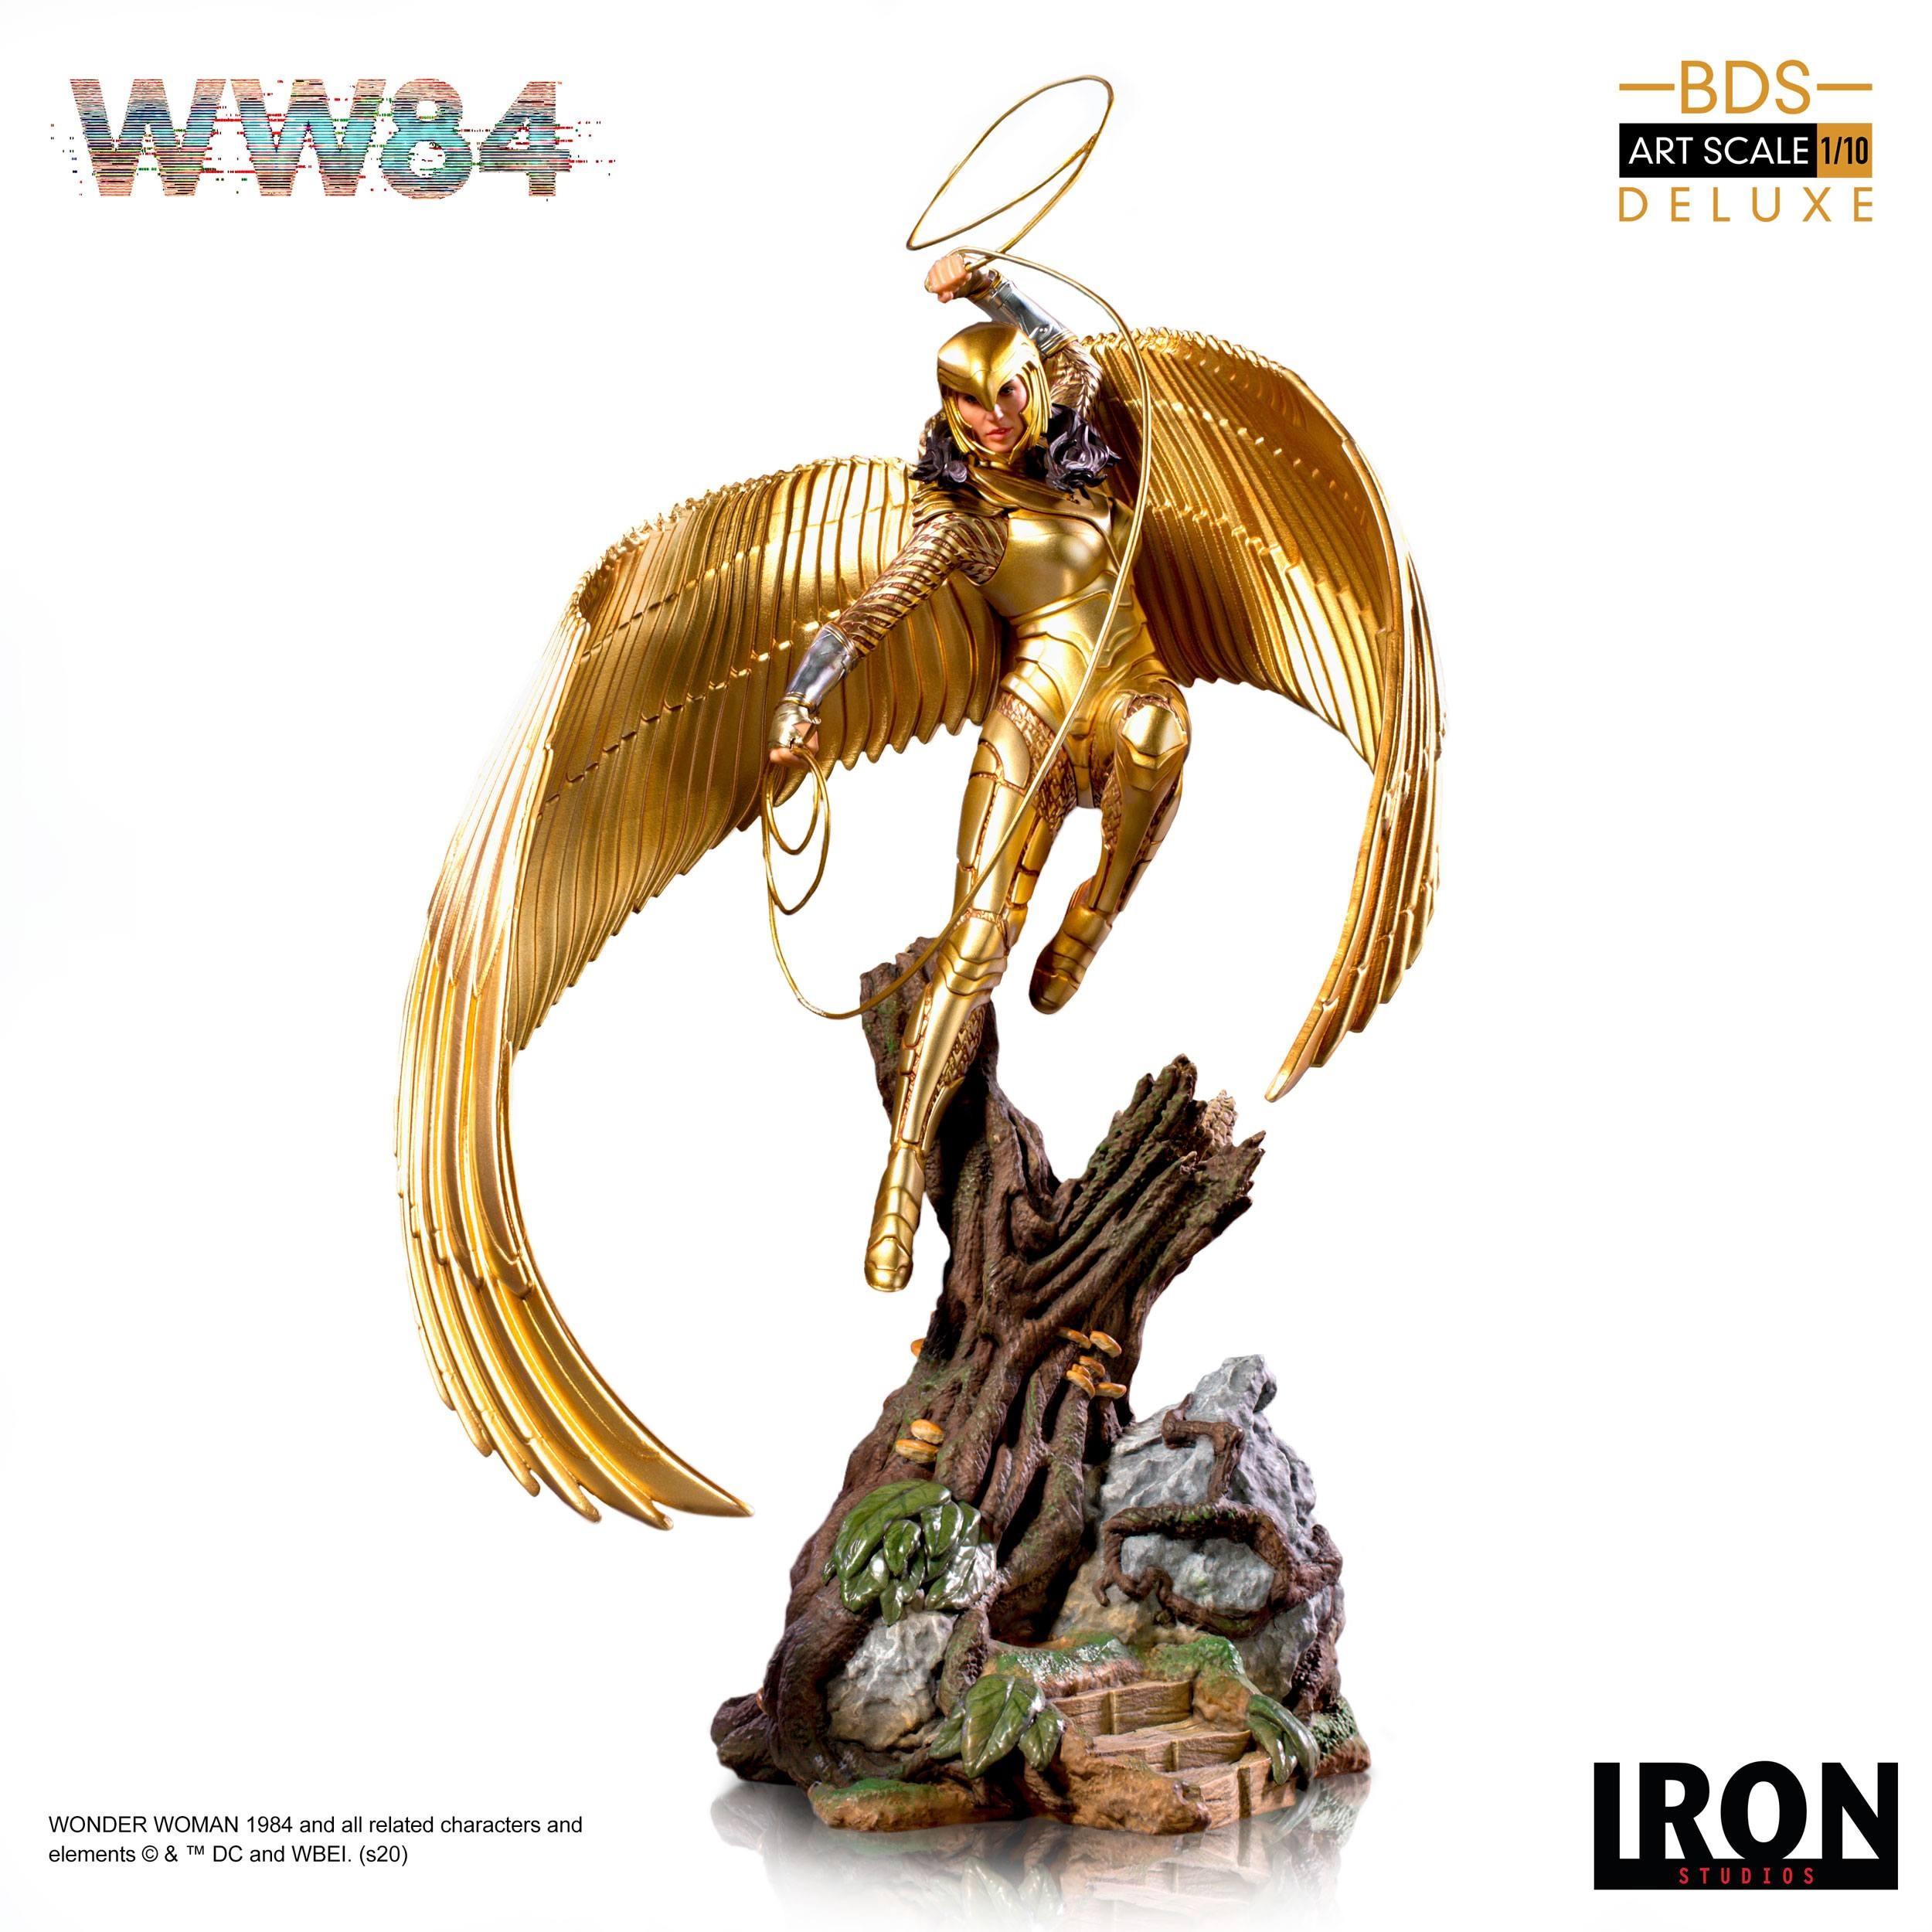 Iron Studios  Statische Figur - Wonder Woman - Deluxe Art Scale 